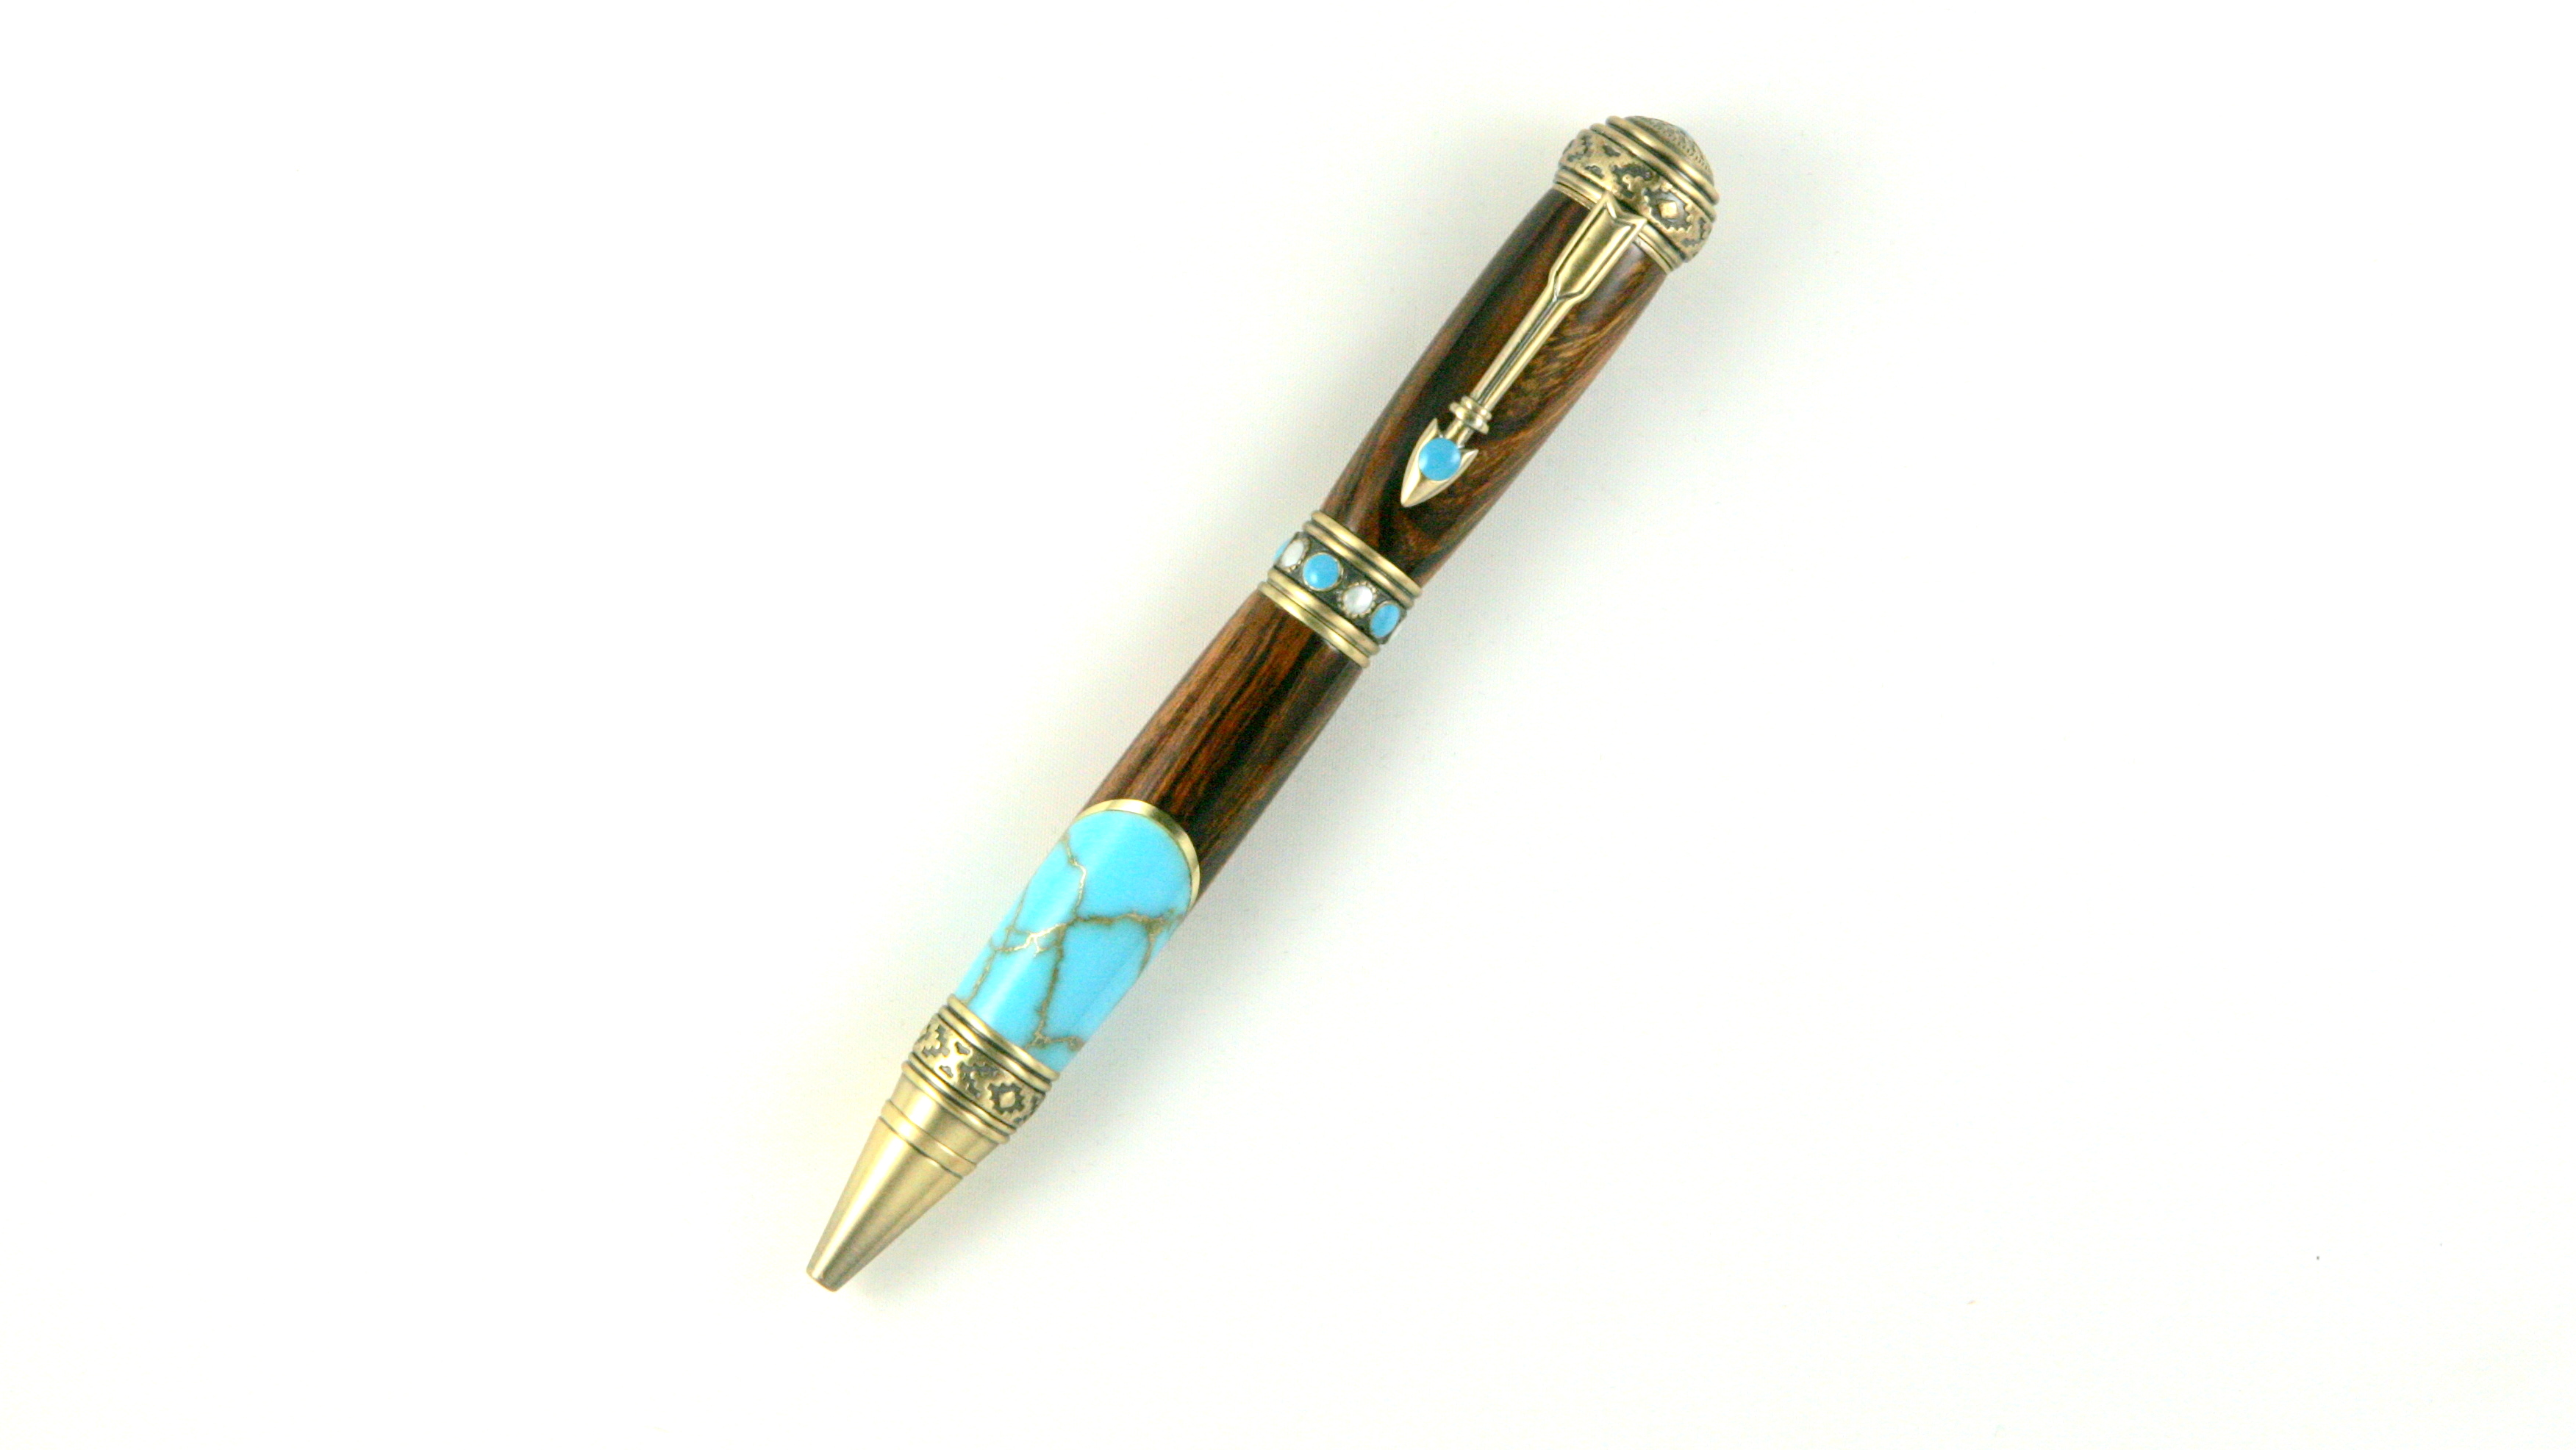 Southwest Pen